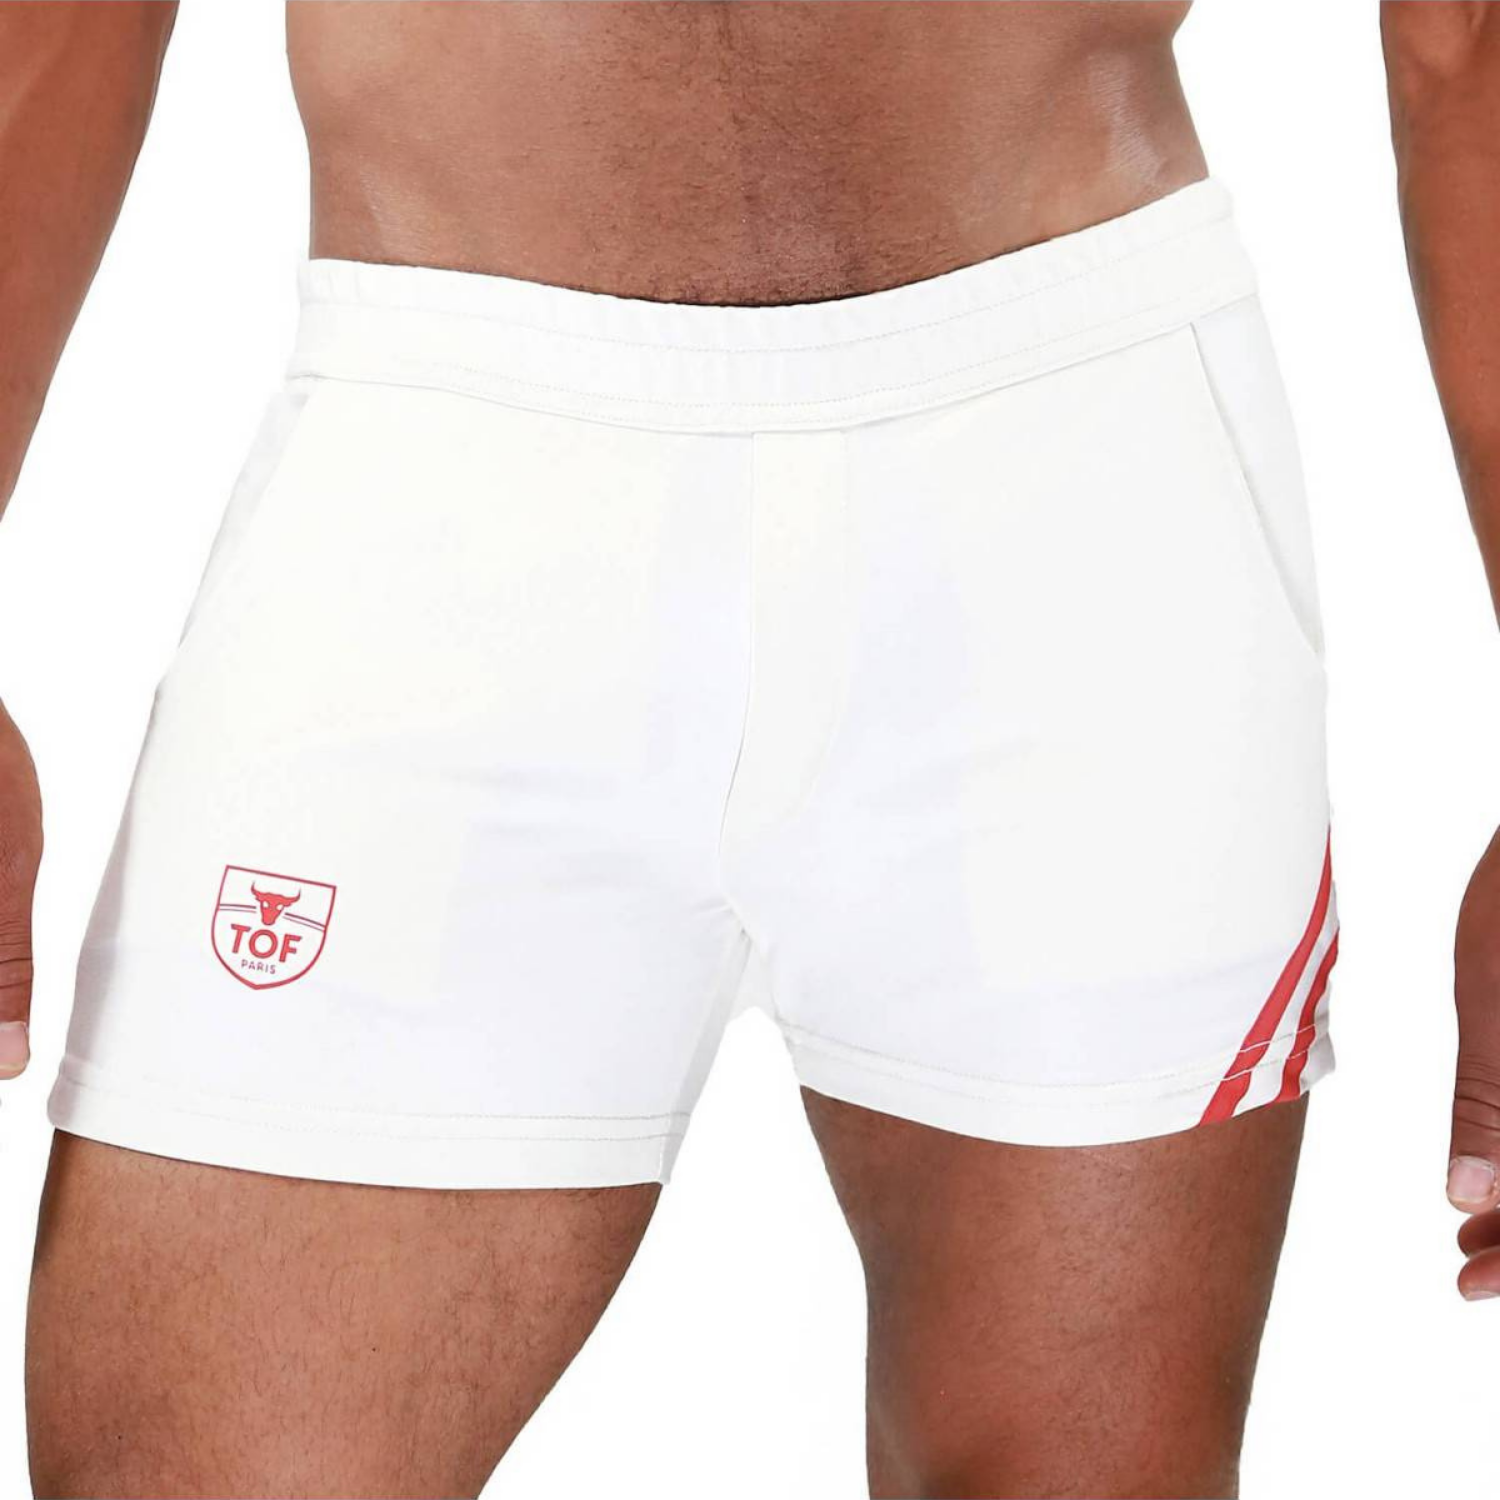 Witte korte broek met 2 rode strepen. Geschikt voor de dansvloer, Sport en Vakantie! Ontworpen door Tof Paris. Te koop bij Flavourez.